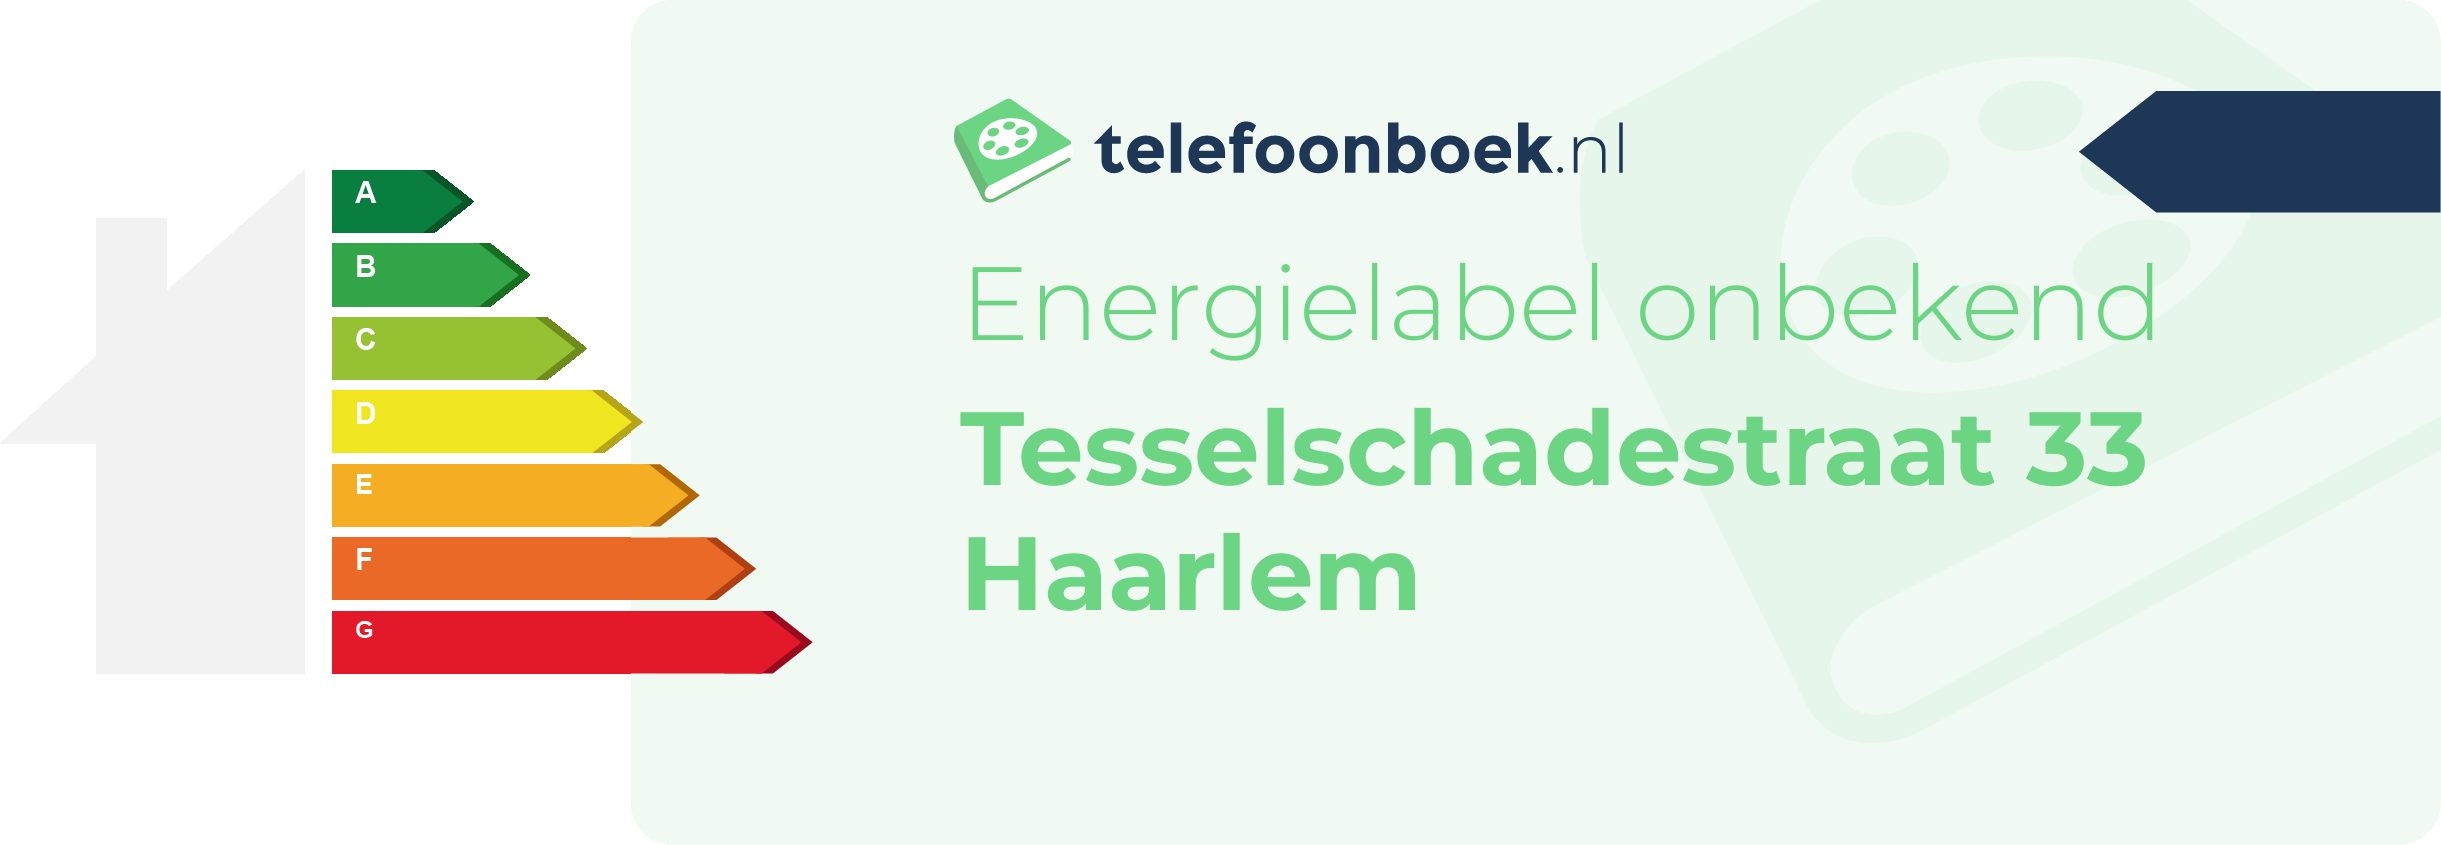 Energielabel Tesselschadestraat 33 Haarlem